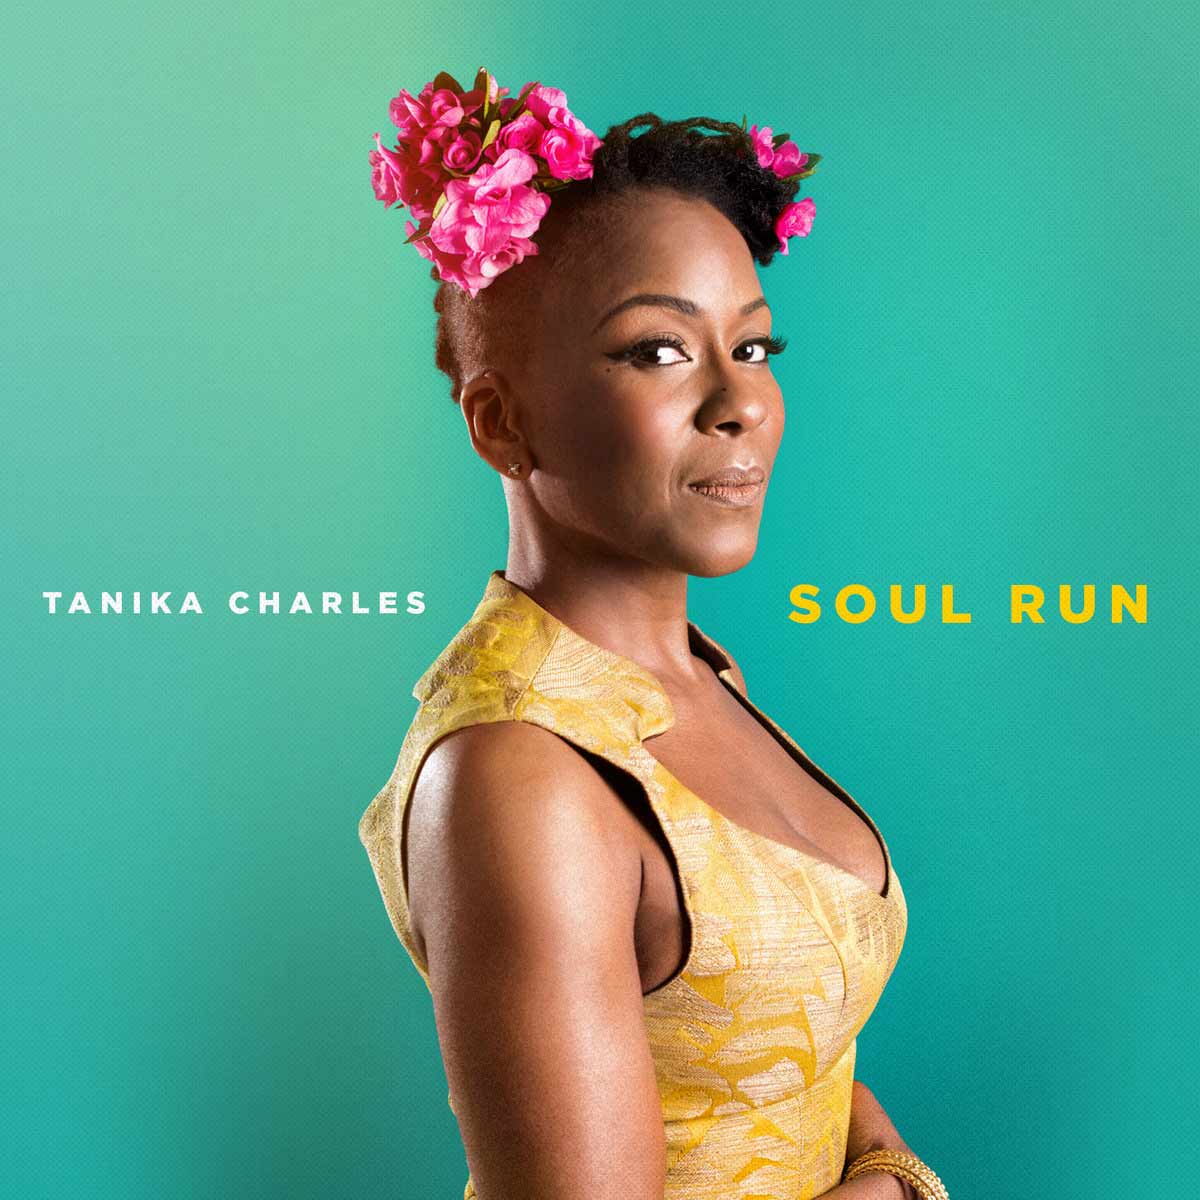 TANIKA CHARLES - Soul Run